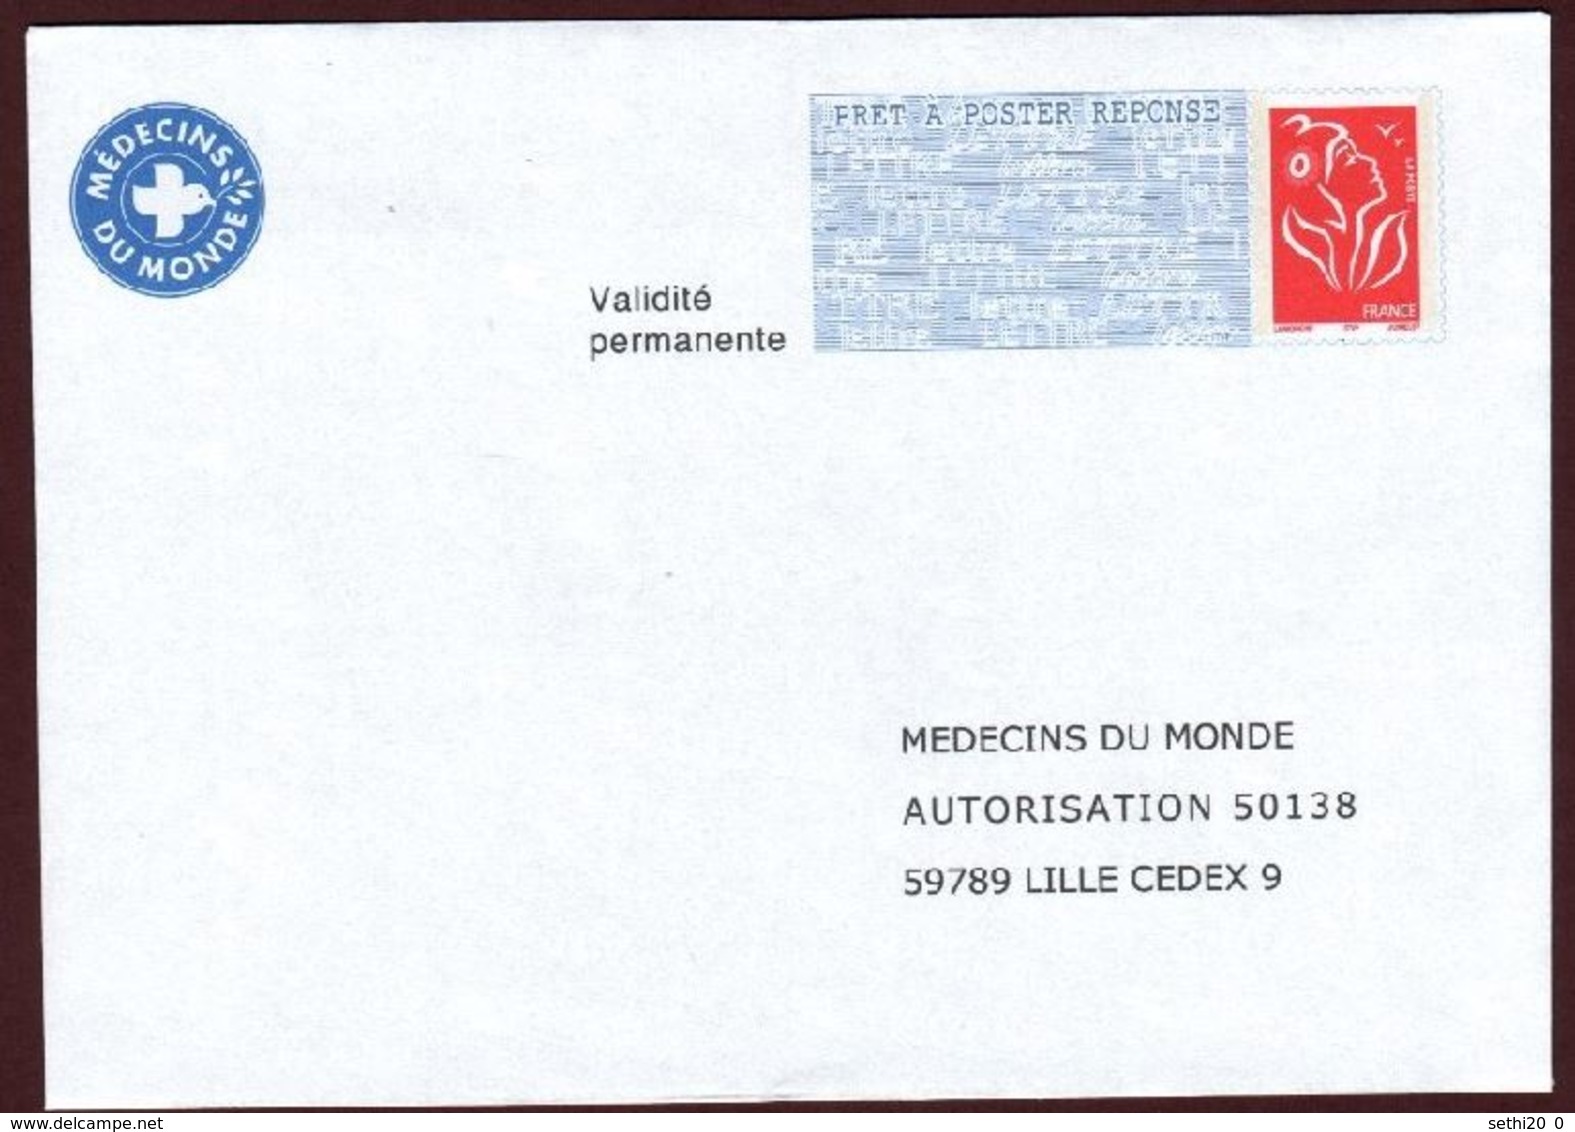 France PAP Réponse  Lamouche  0509632 MEDECINS DU MONDE - Prêts-à-poster:Answer/Luquet